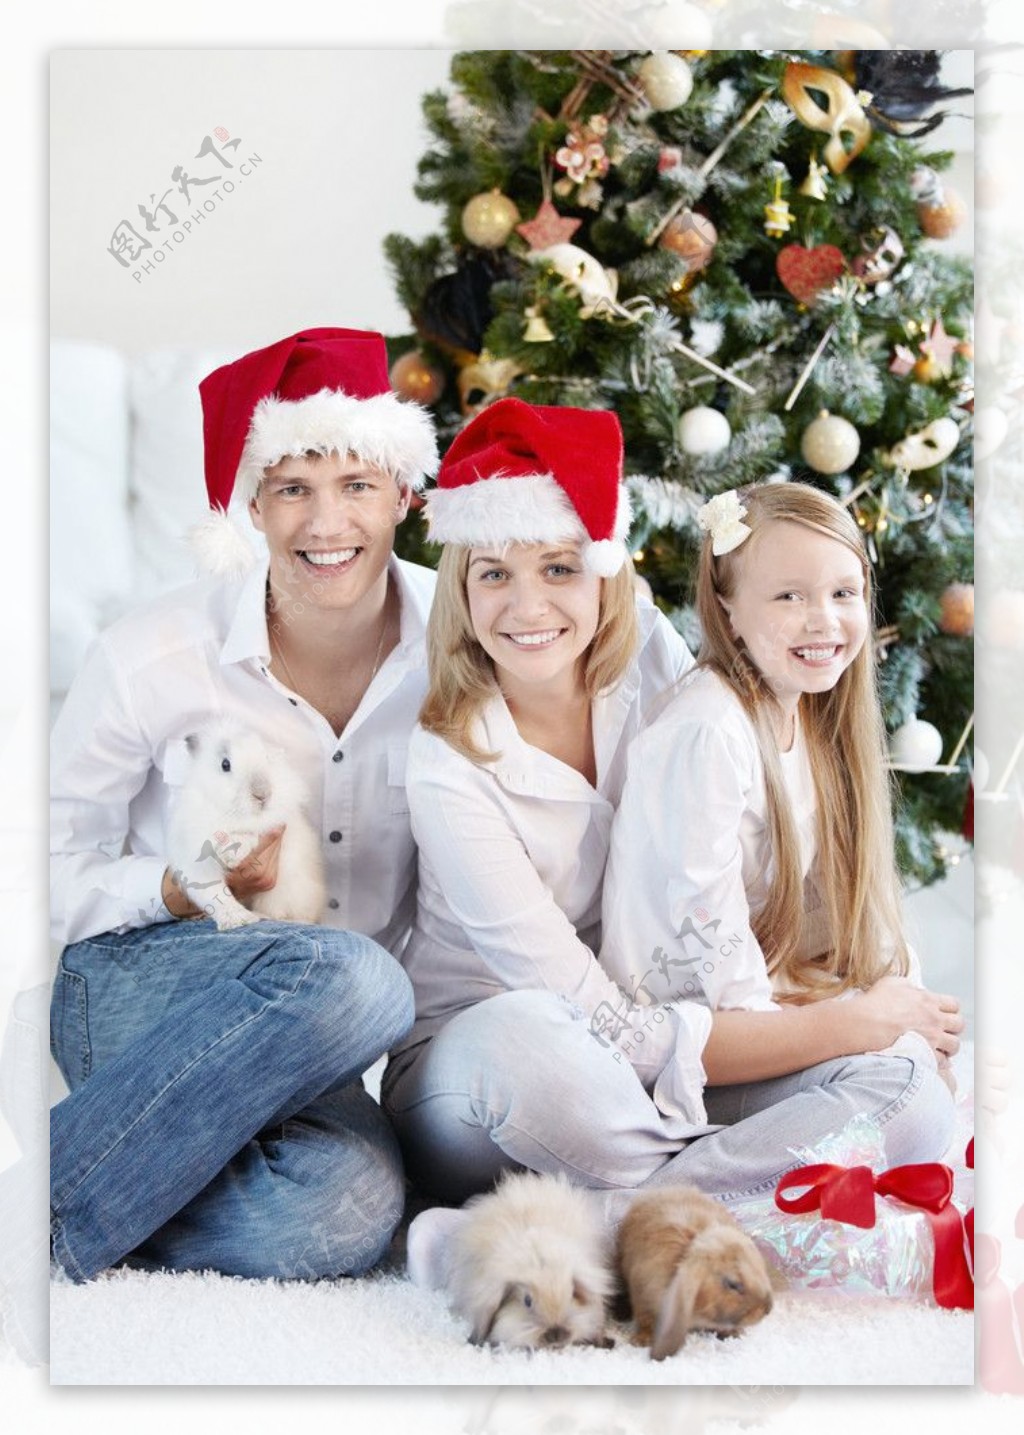 抱着兔子的圣诞幸福一家人图片